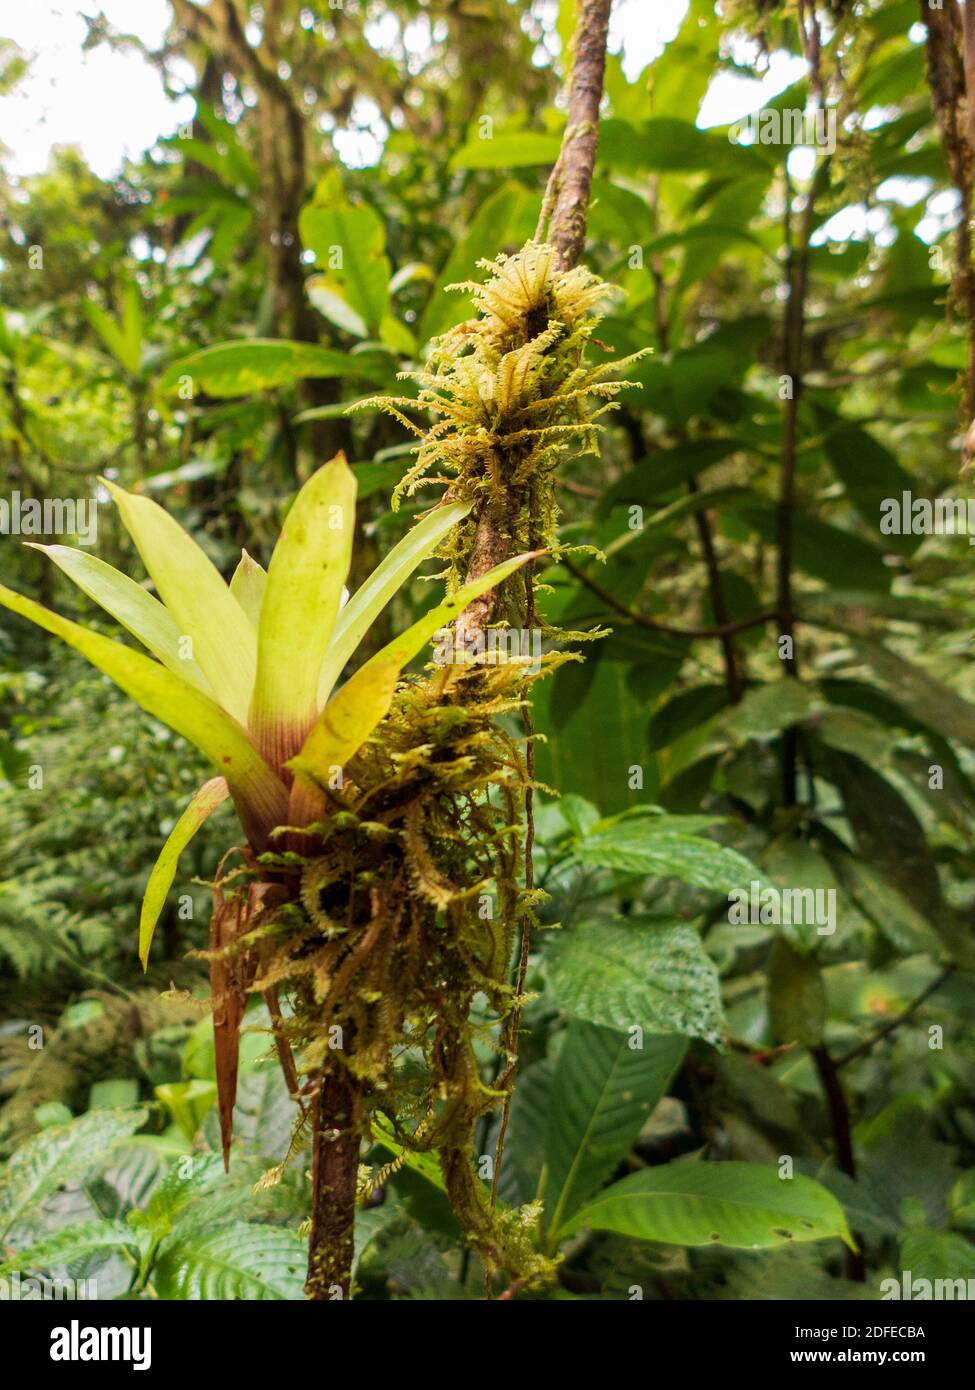 Escursione attraverso la foresta pluviale della Costa Rica. Sugli alberi crescono bromeliadi, felci, selaginella e altri epifiti. Tanti toni verdi diversi. Foto Stock